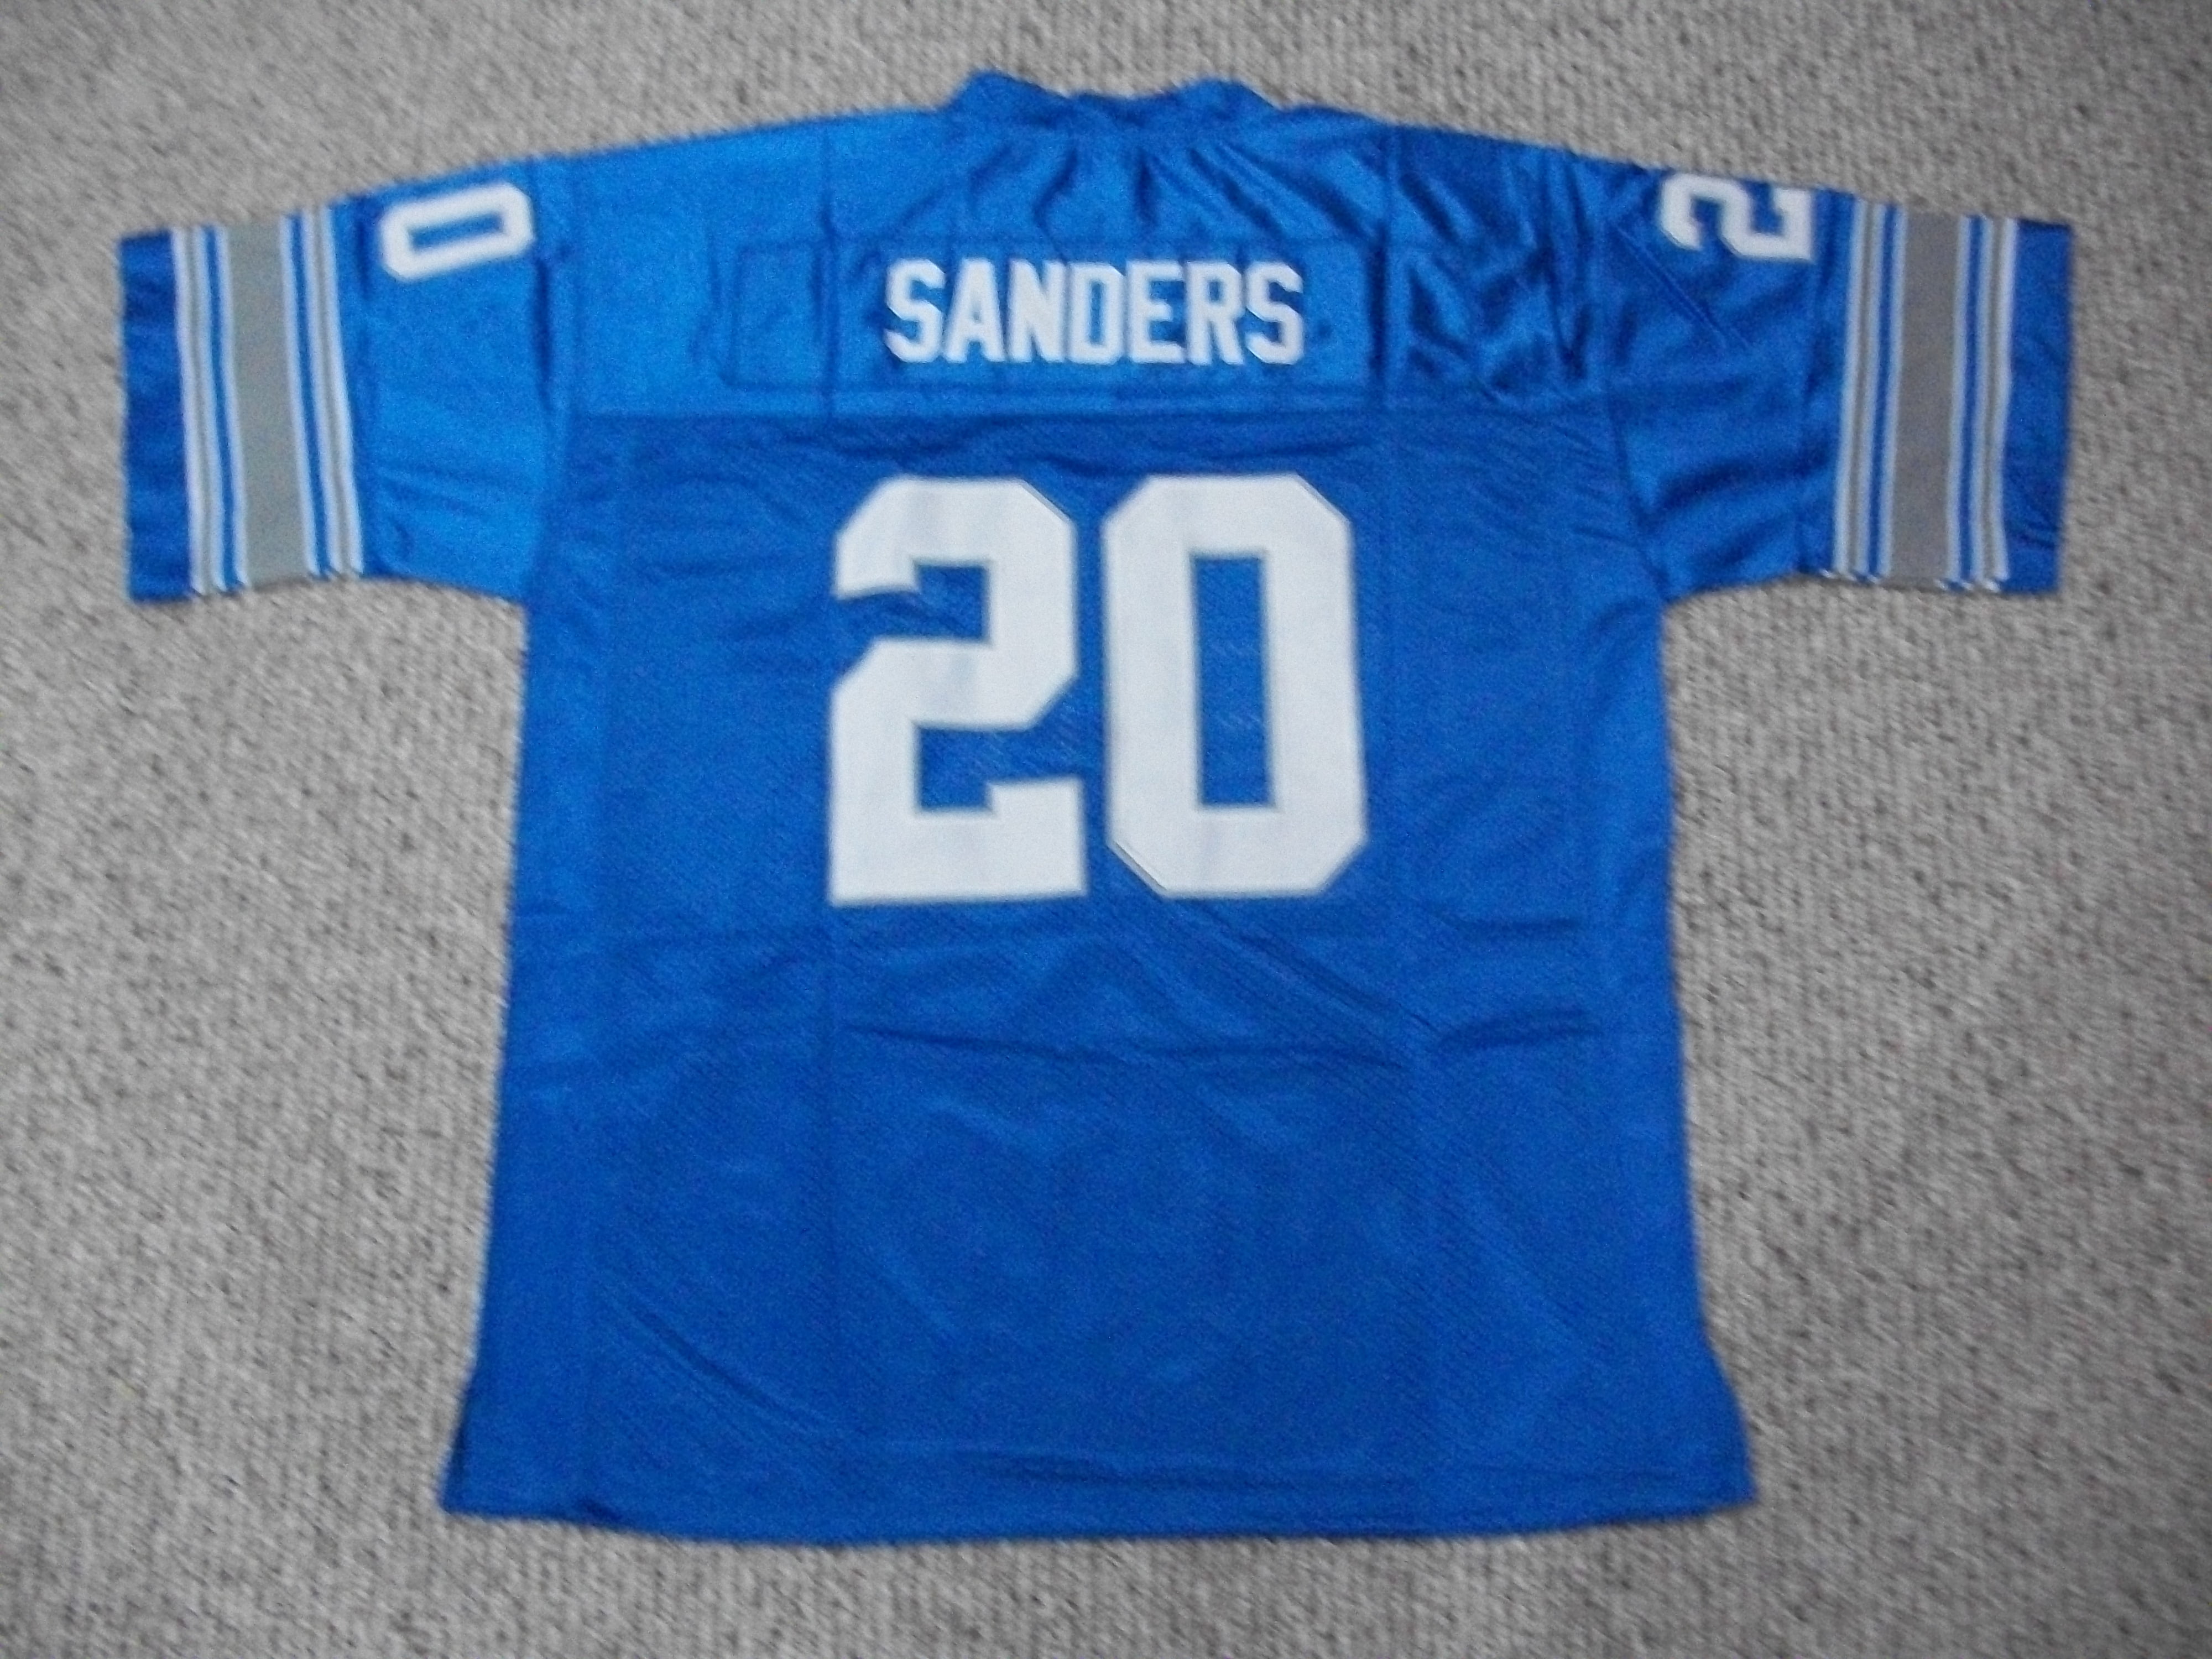 sanders jersey 20